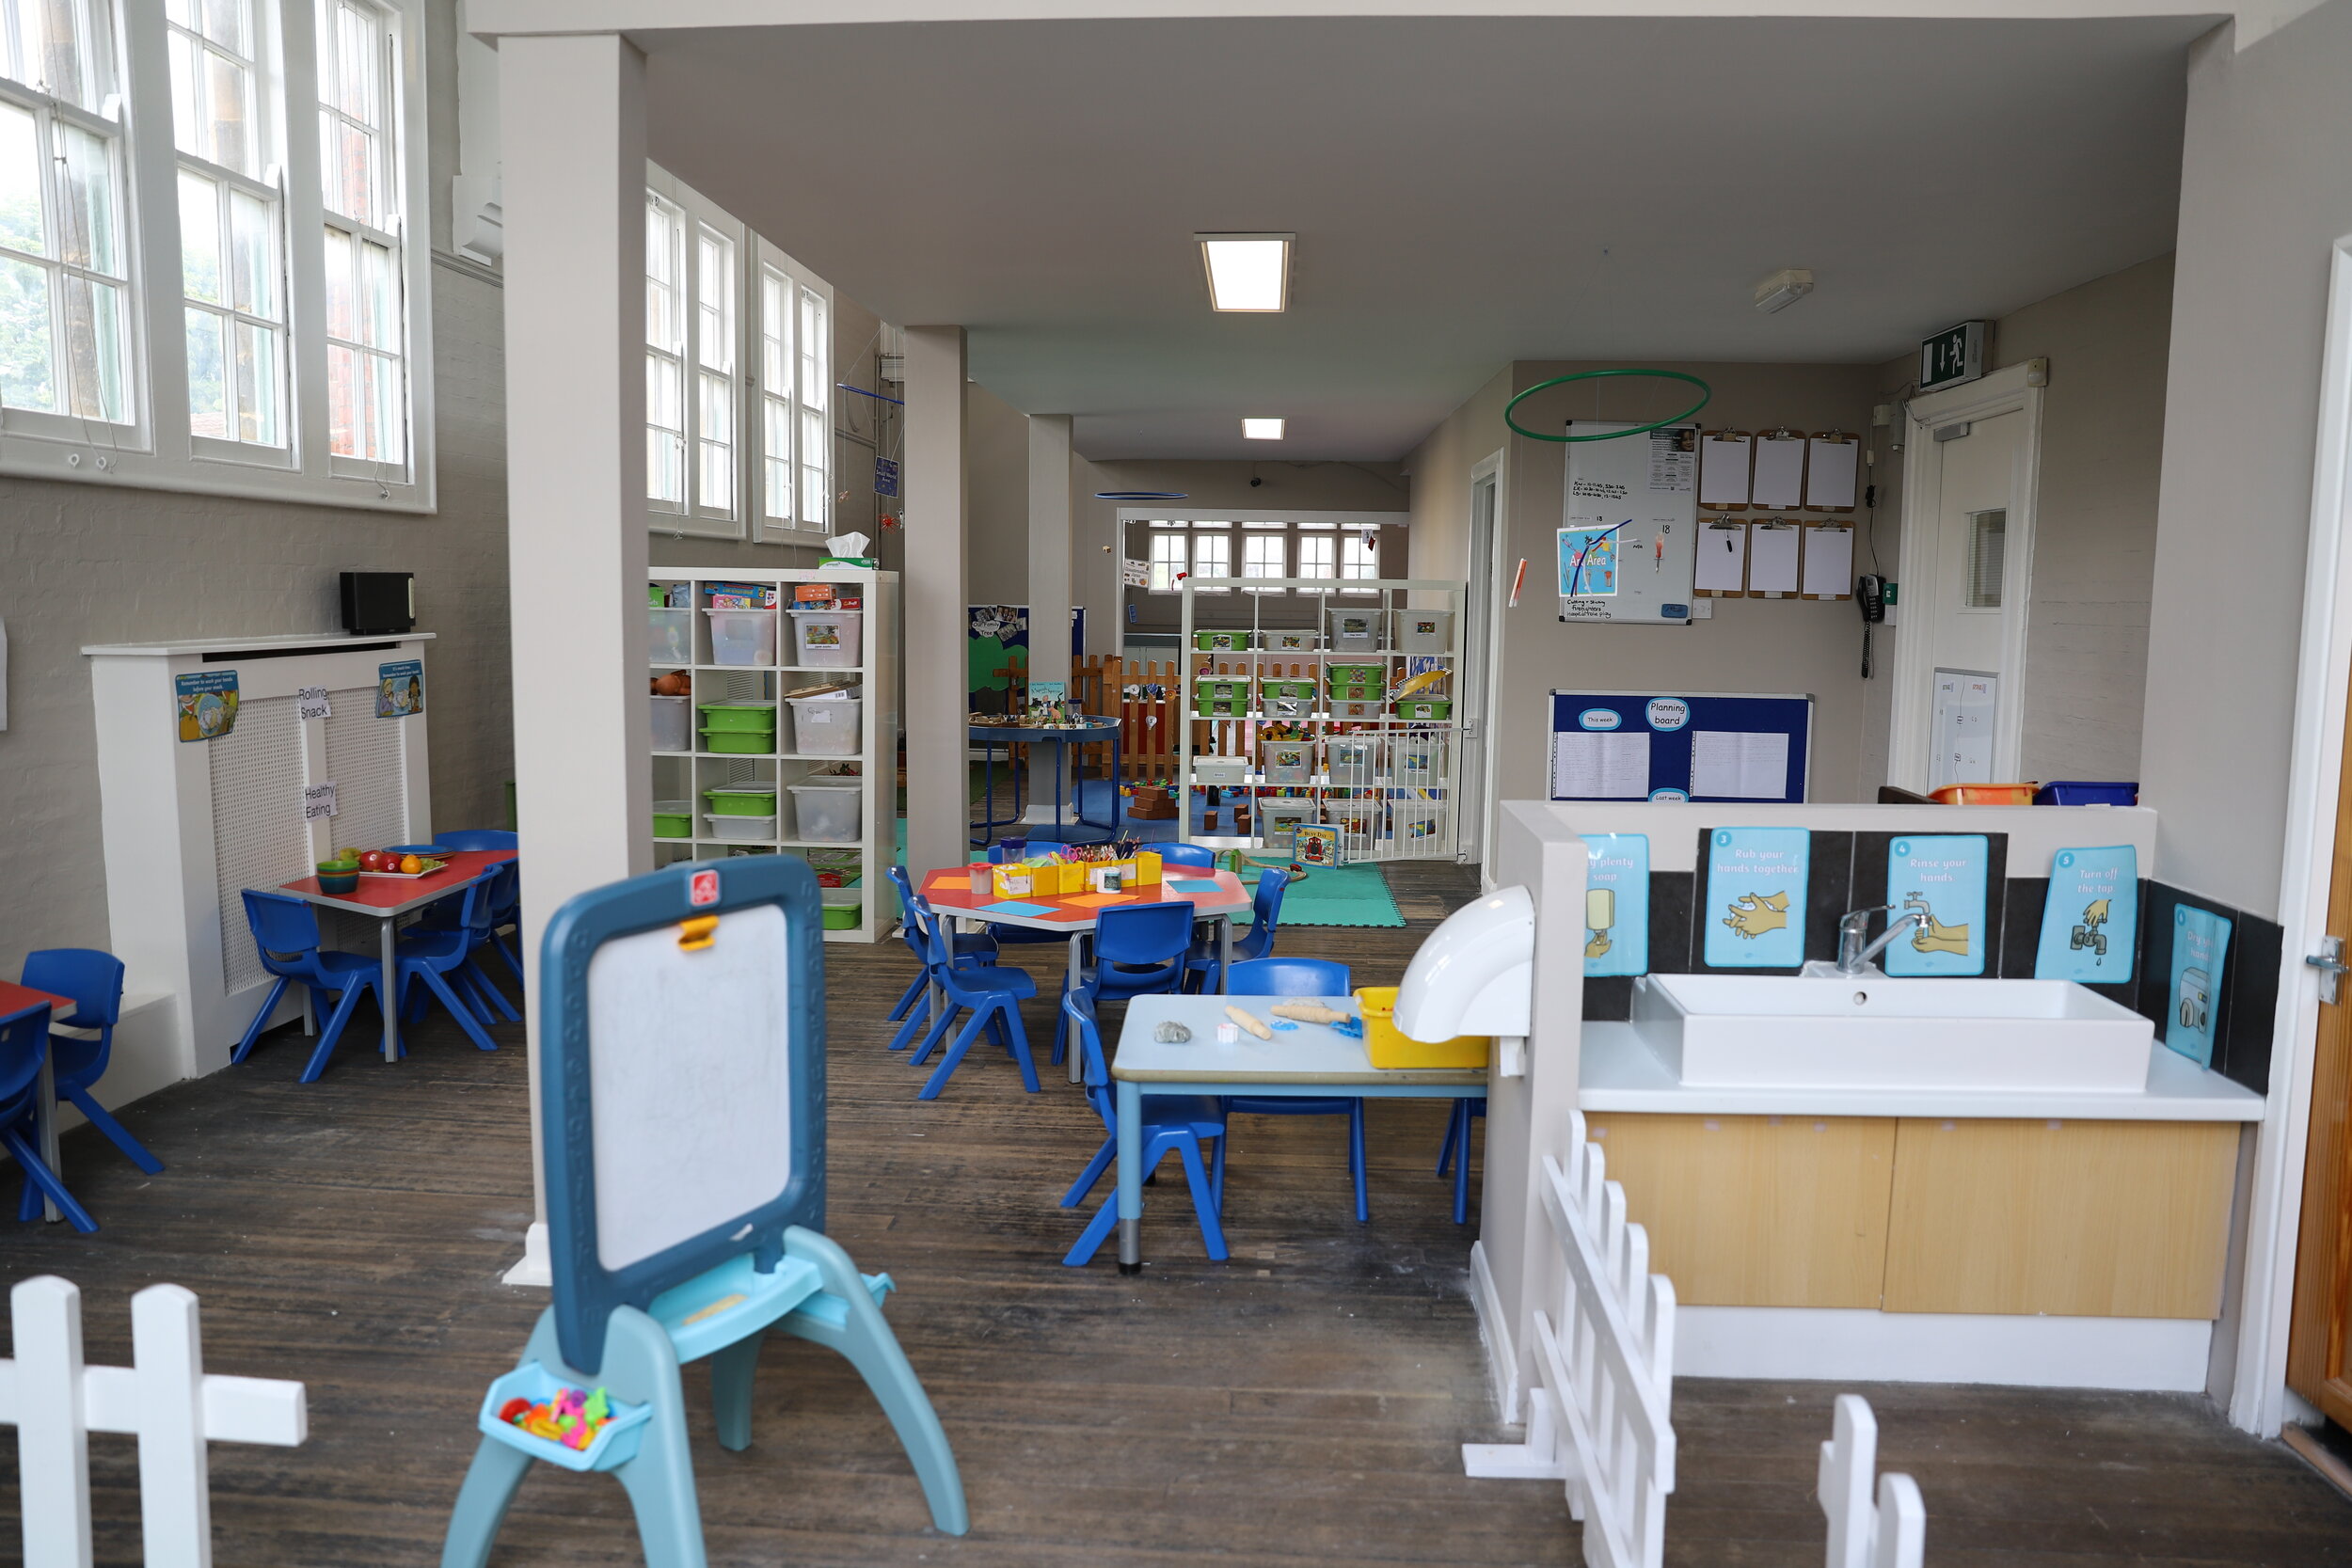 Playschool Nursery St. Albans - Preschool Room